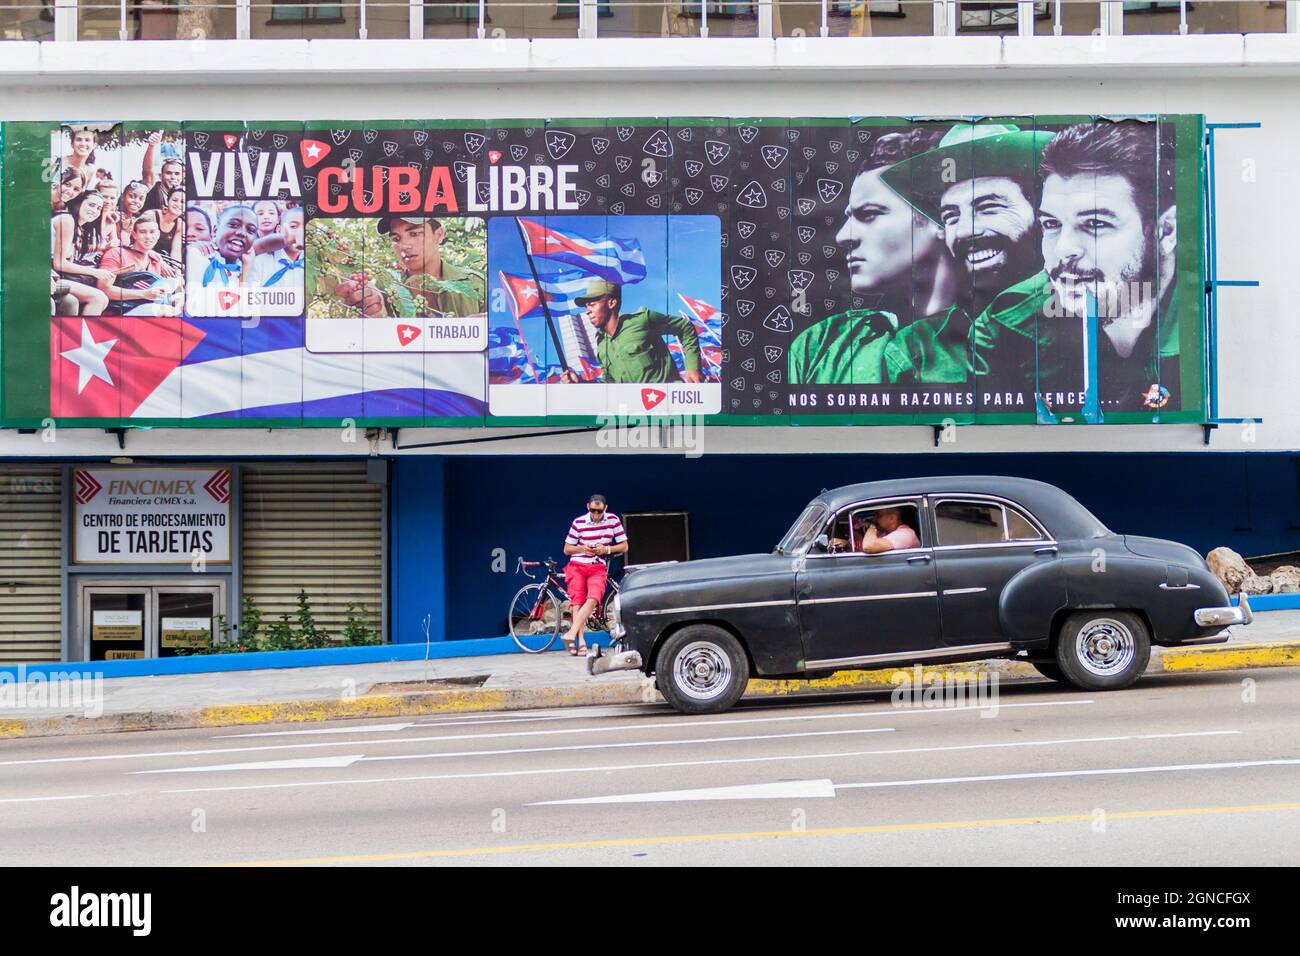 LA HAVANE, CUBA - 21 FÉVRIER 2016 : voiture d'époque et affiche propagandistique dans le quartier de Vedado à la Havane. Banque D'Images